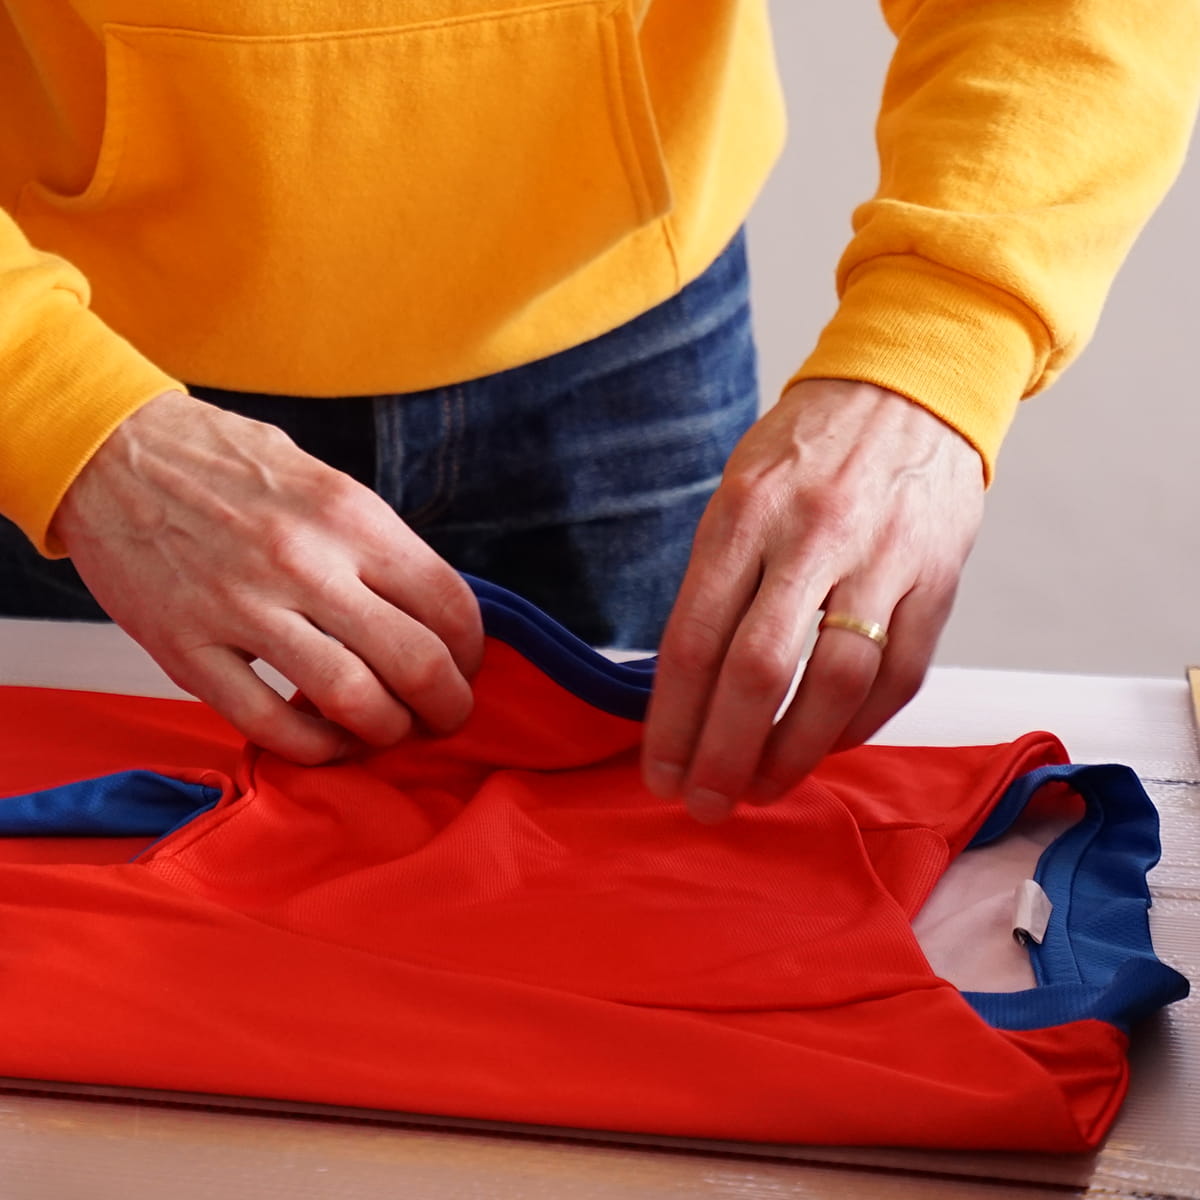 Clothing Folding Demo